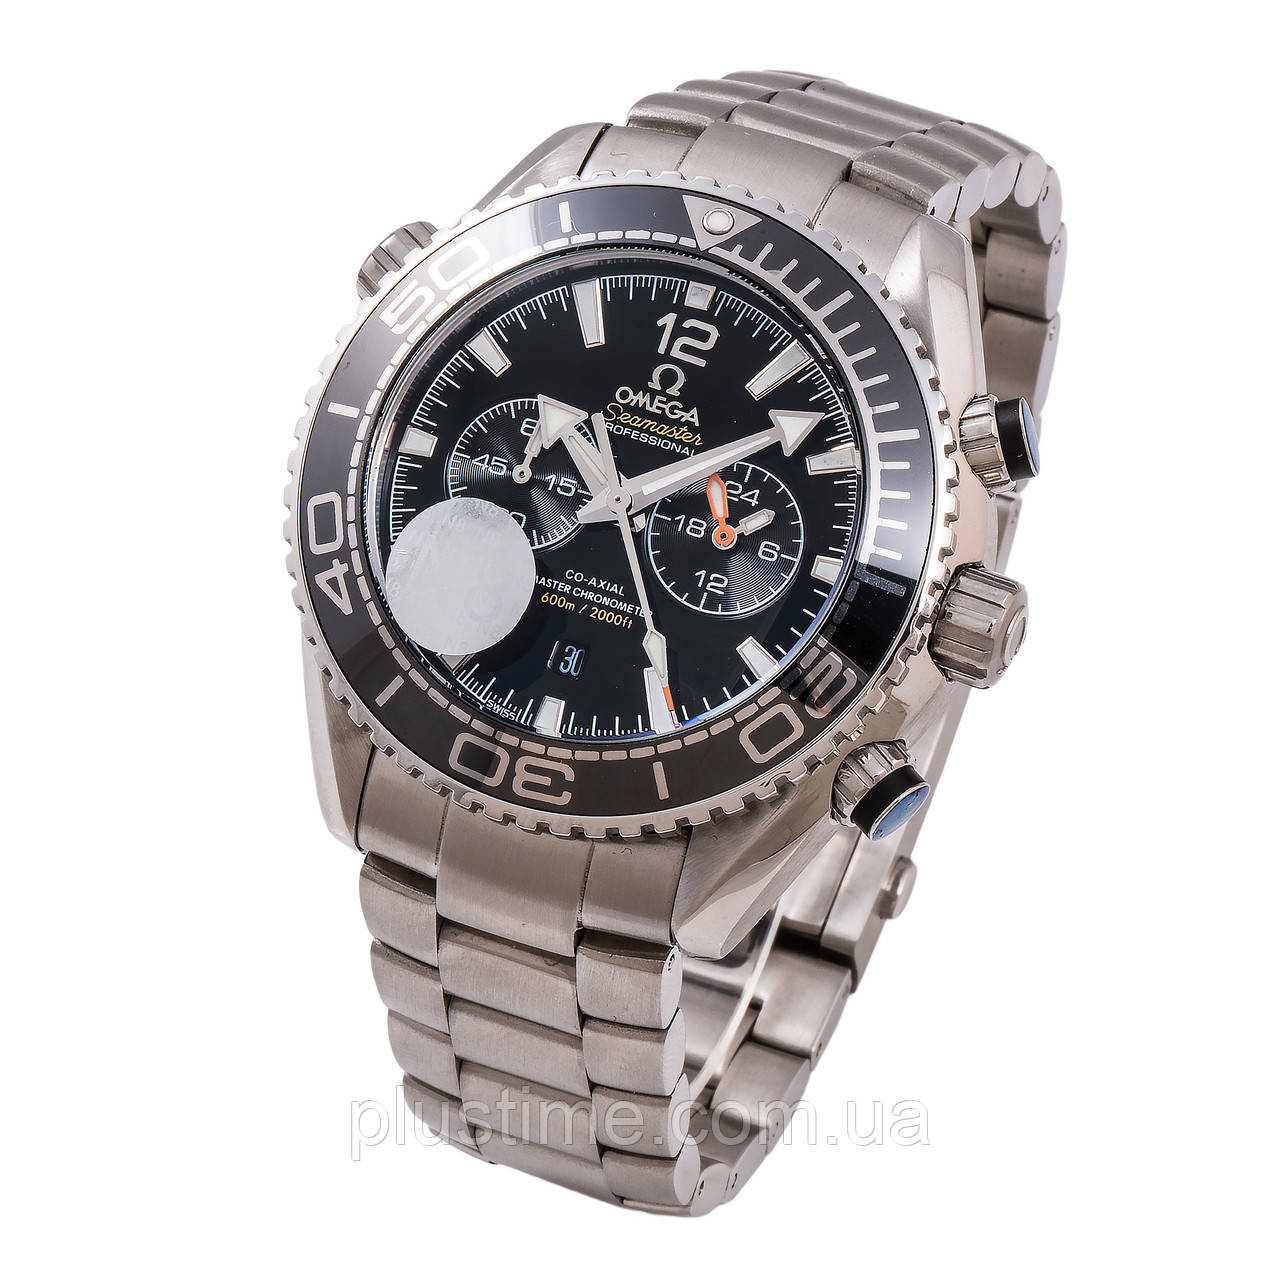 Omega Seamaster Planet Ocean Chronograph чоловічі наручні годинники хронограф ААА класу Японія